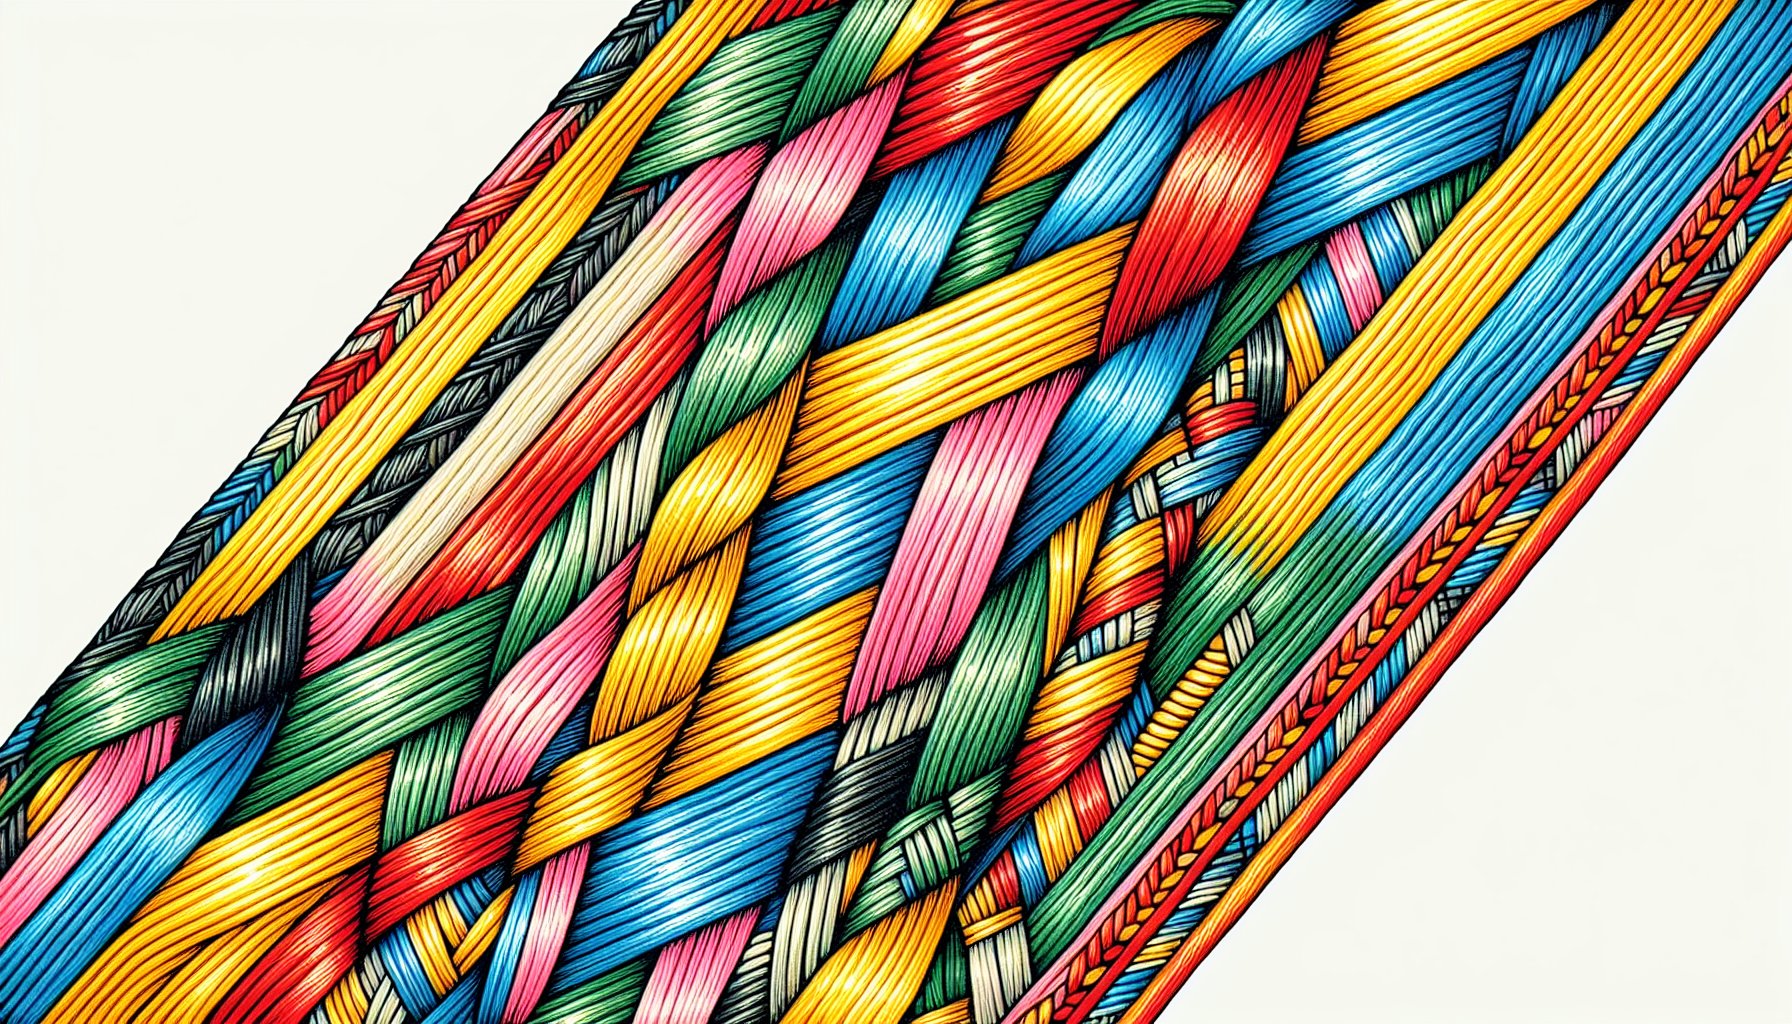 Candy stripe friendship bracelet pattern